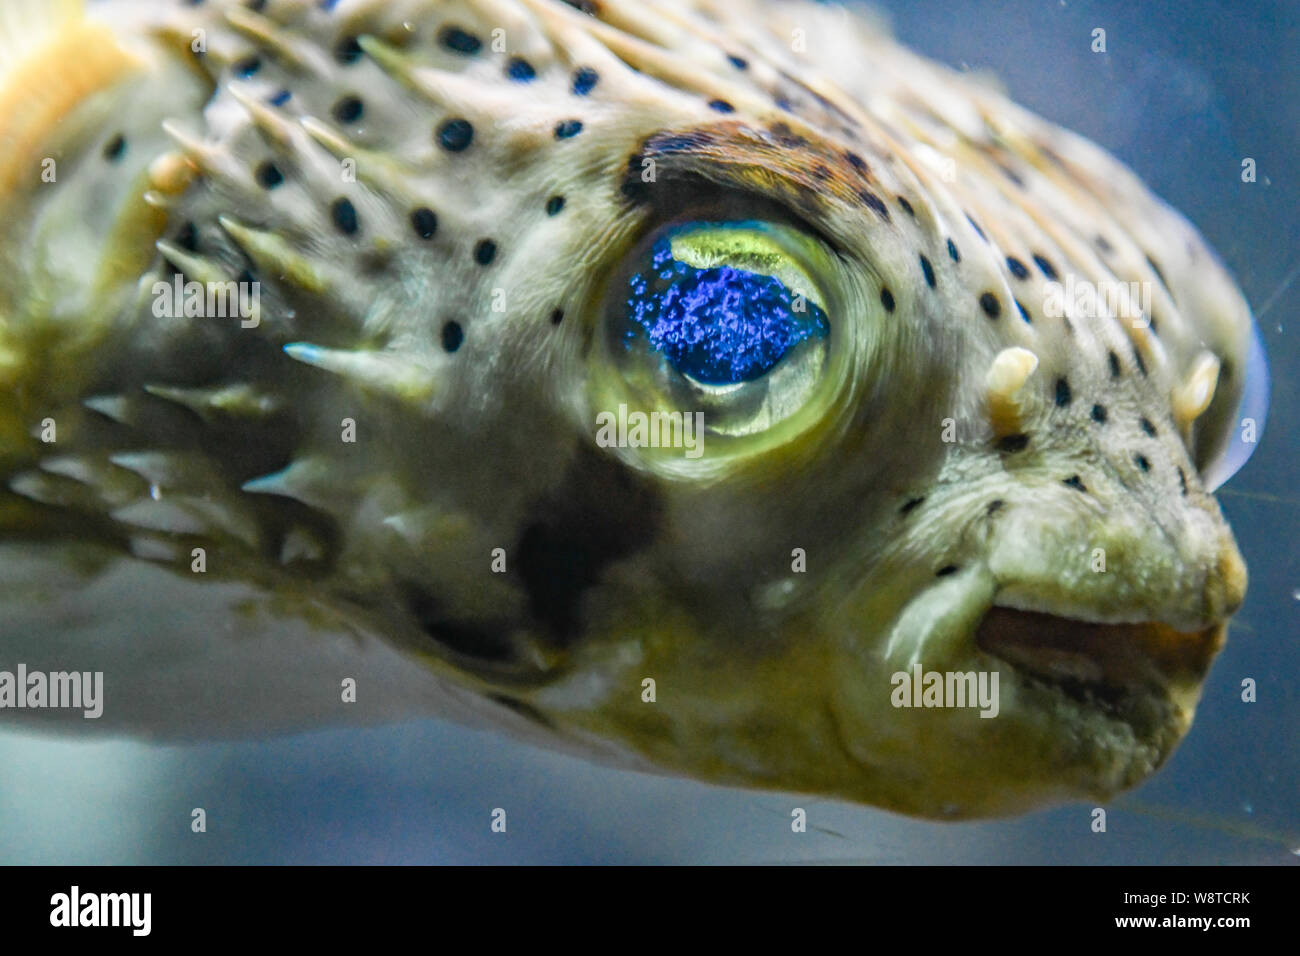 Pesce Palla Di Porcospino Immagini E Fotos Stock Alamy